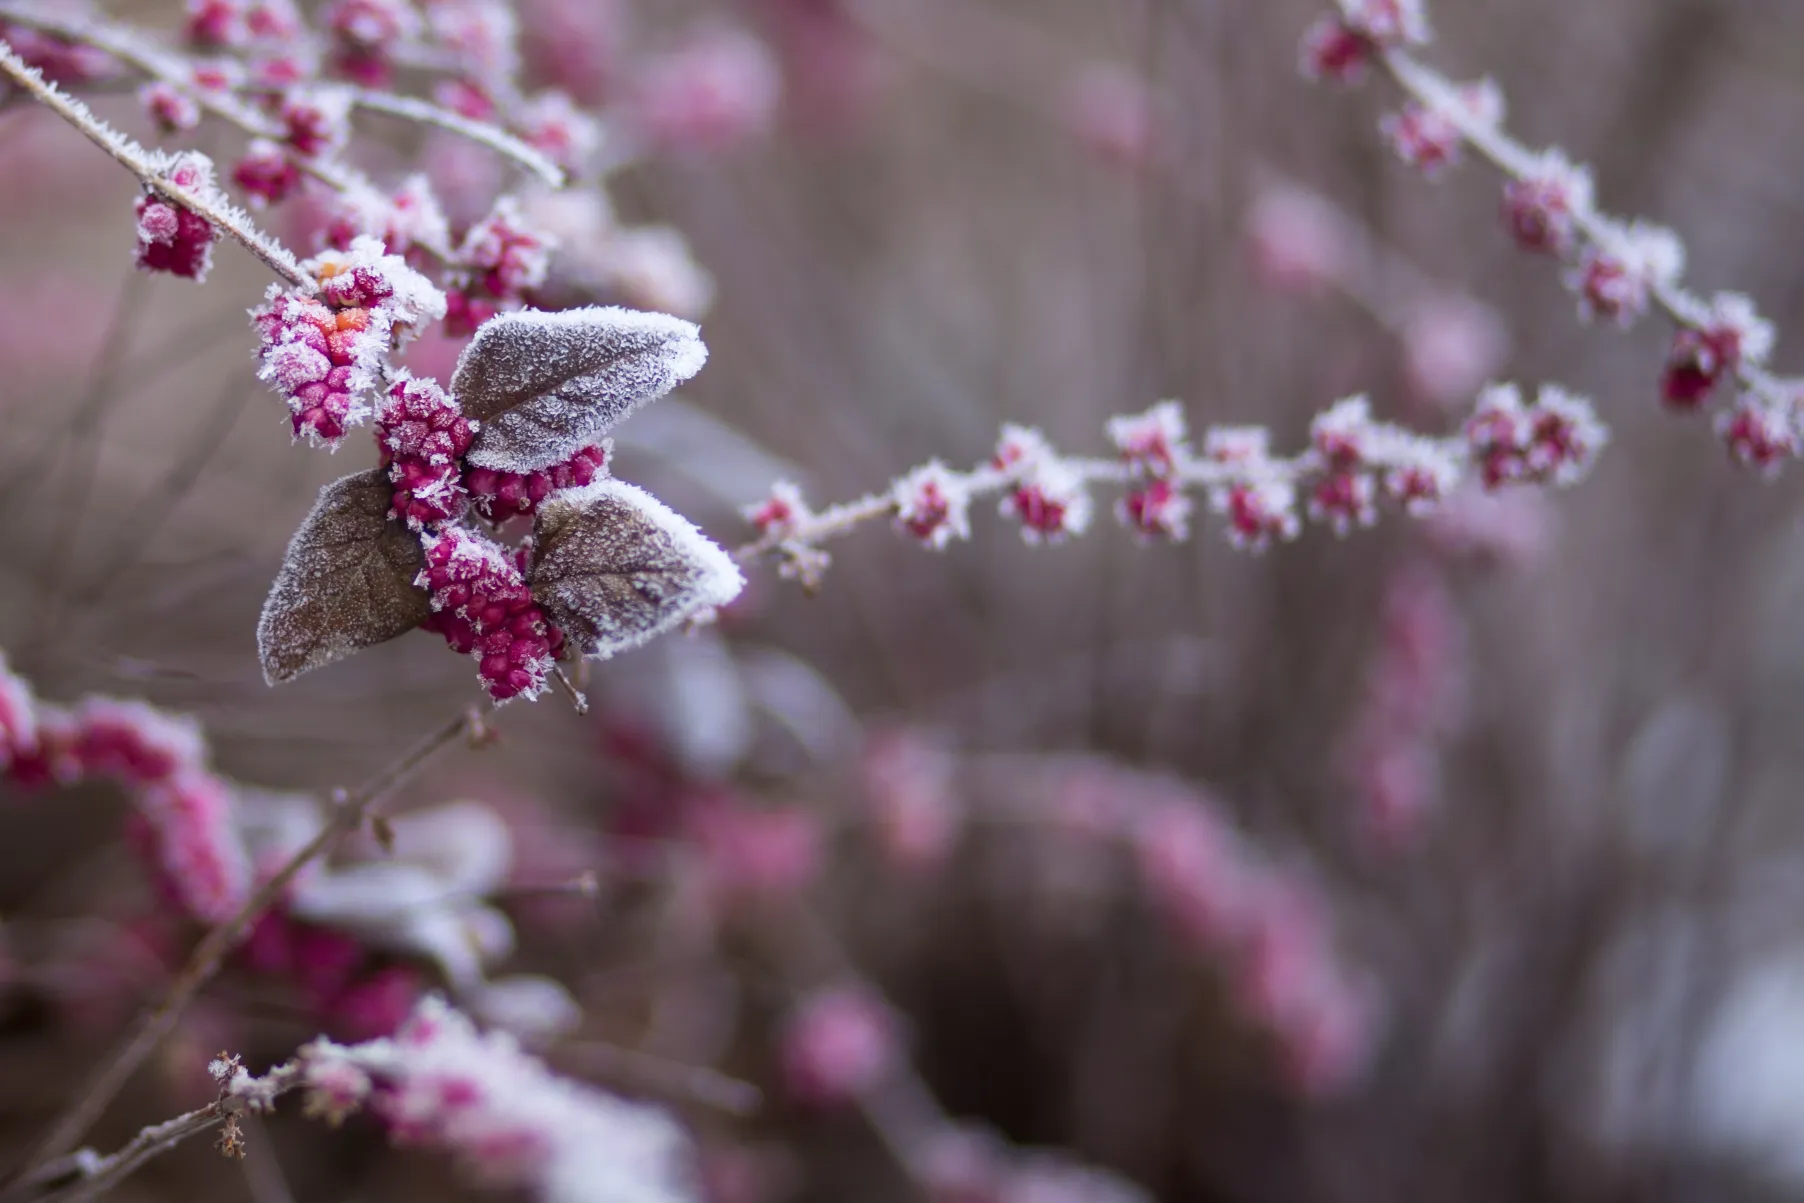 de bijen in de koude lente Photo by freestocks on Unsplash